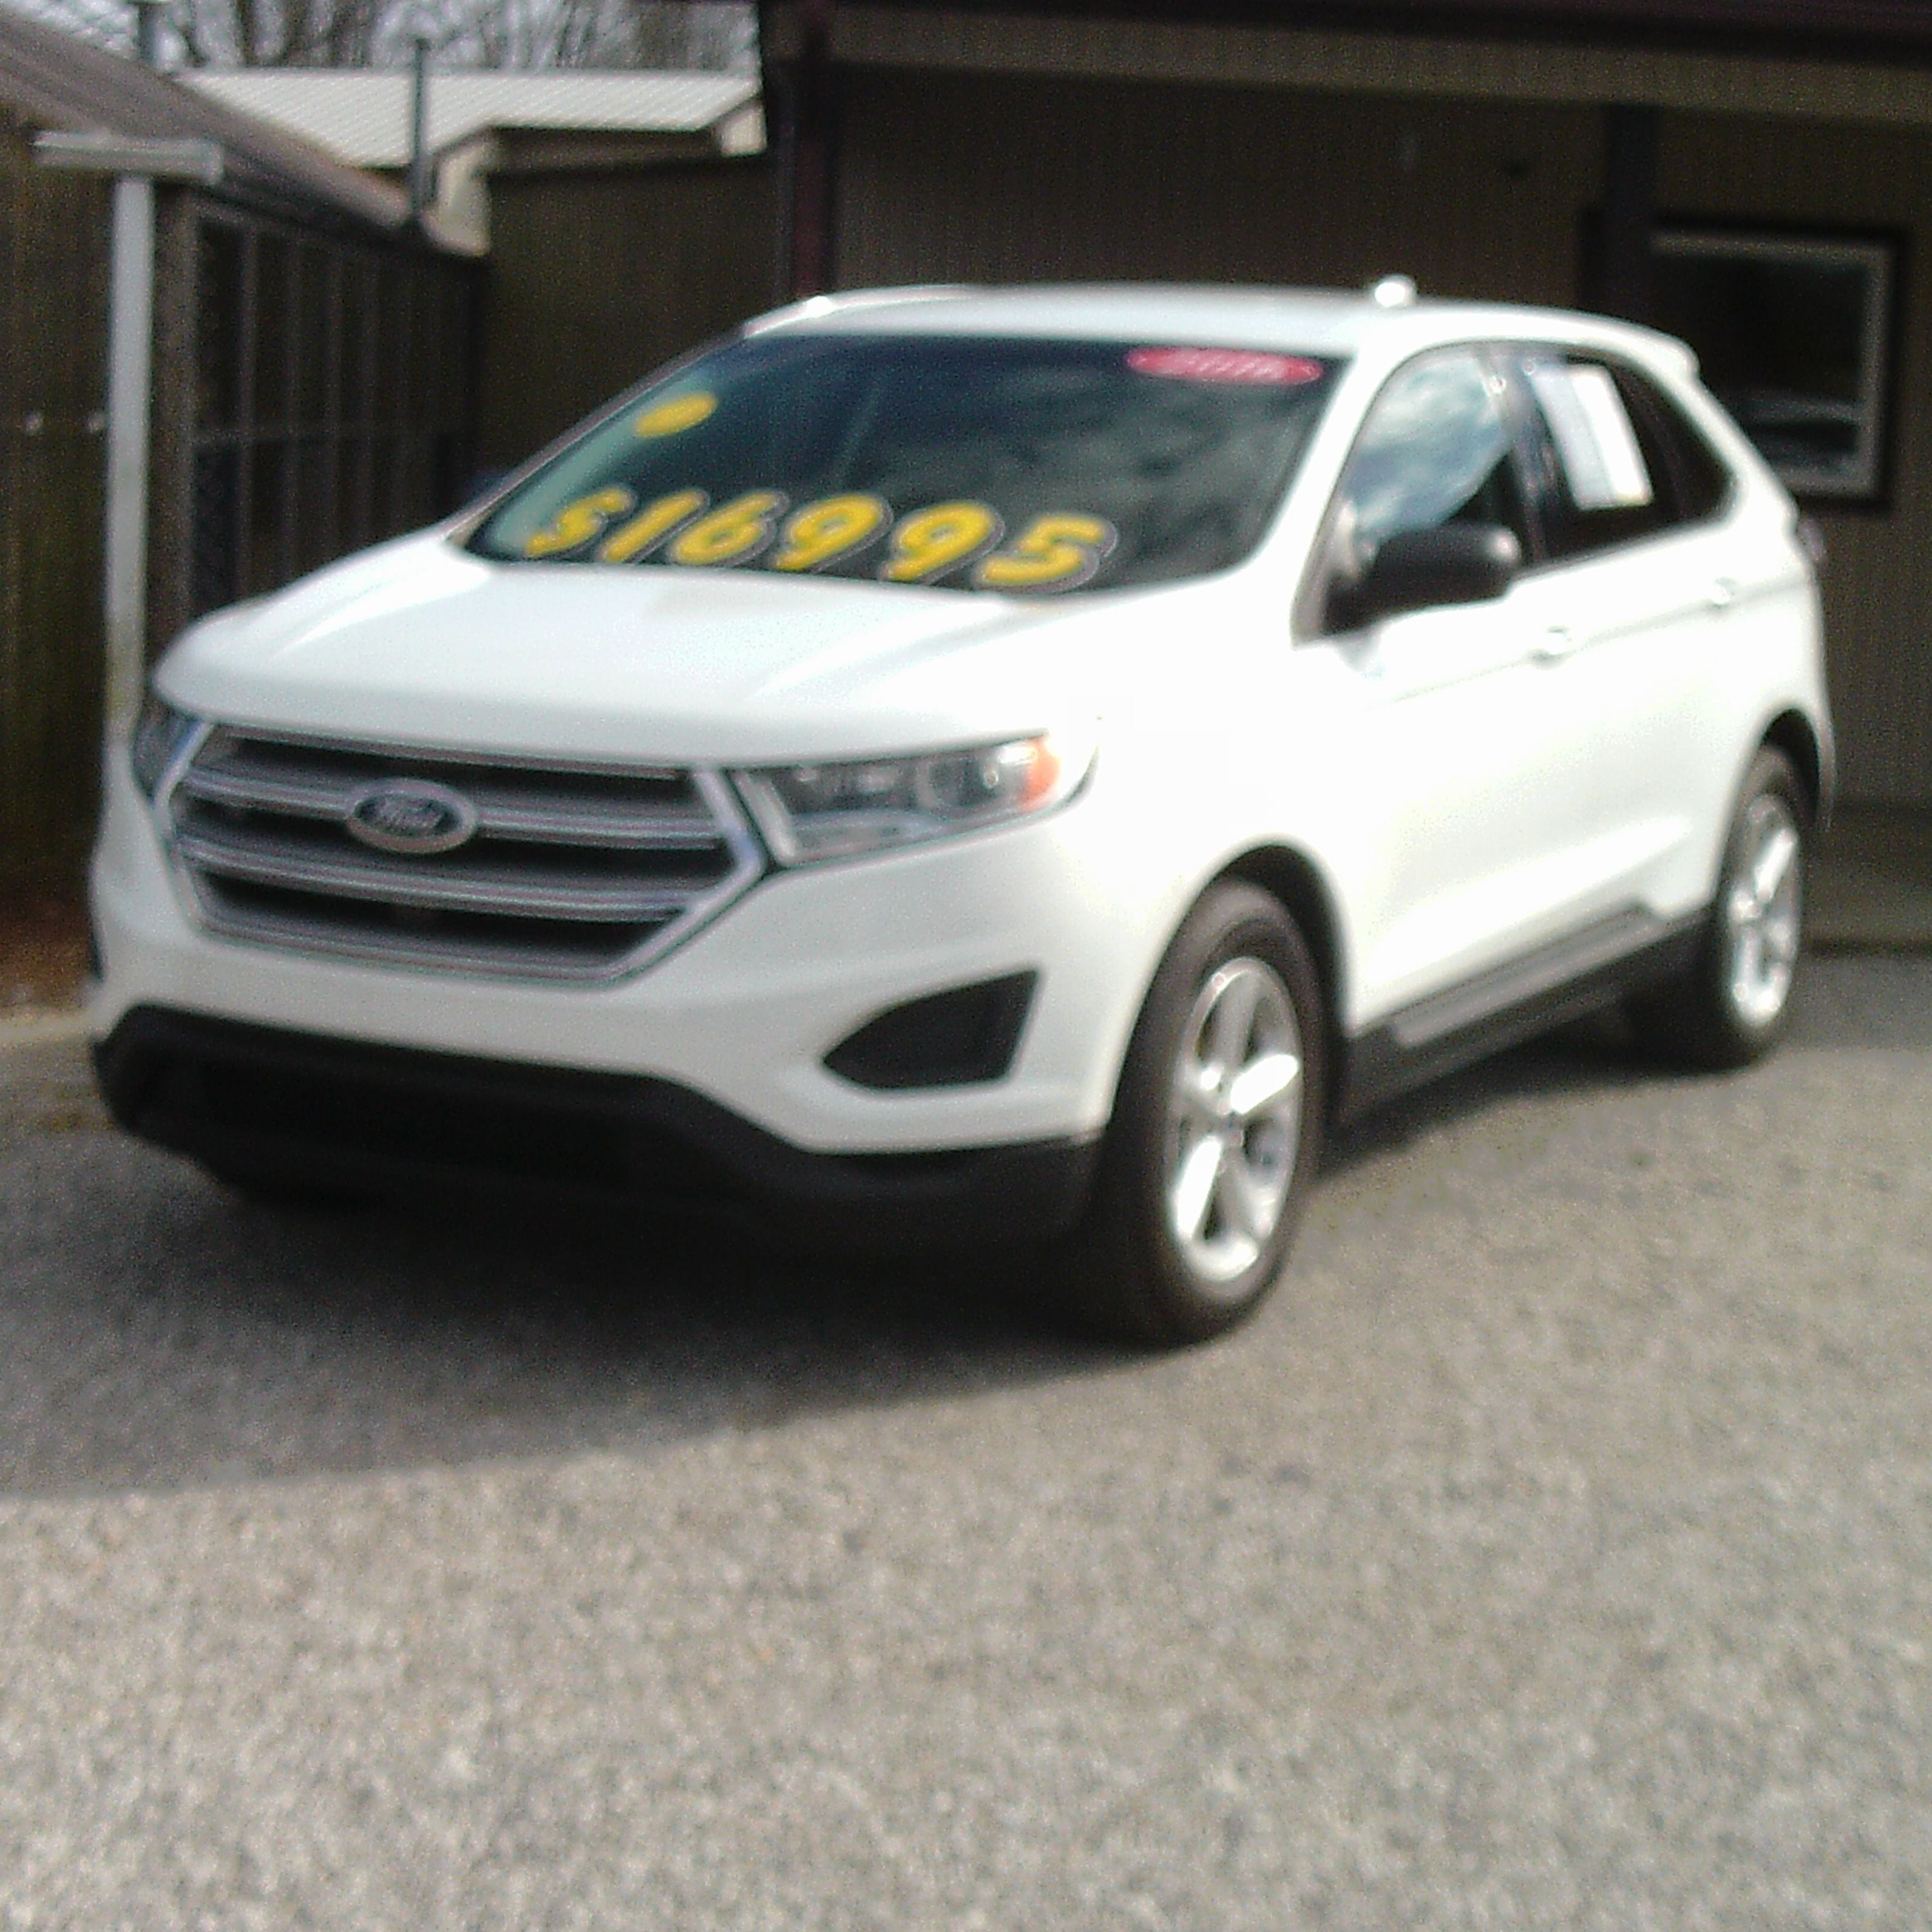 Auto Sales in Clarkson, Kentucky